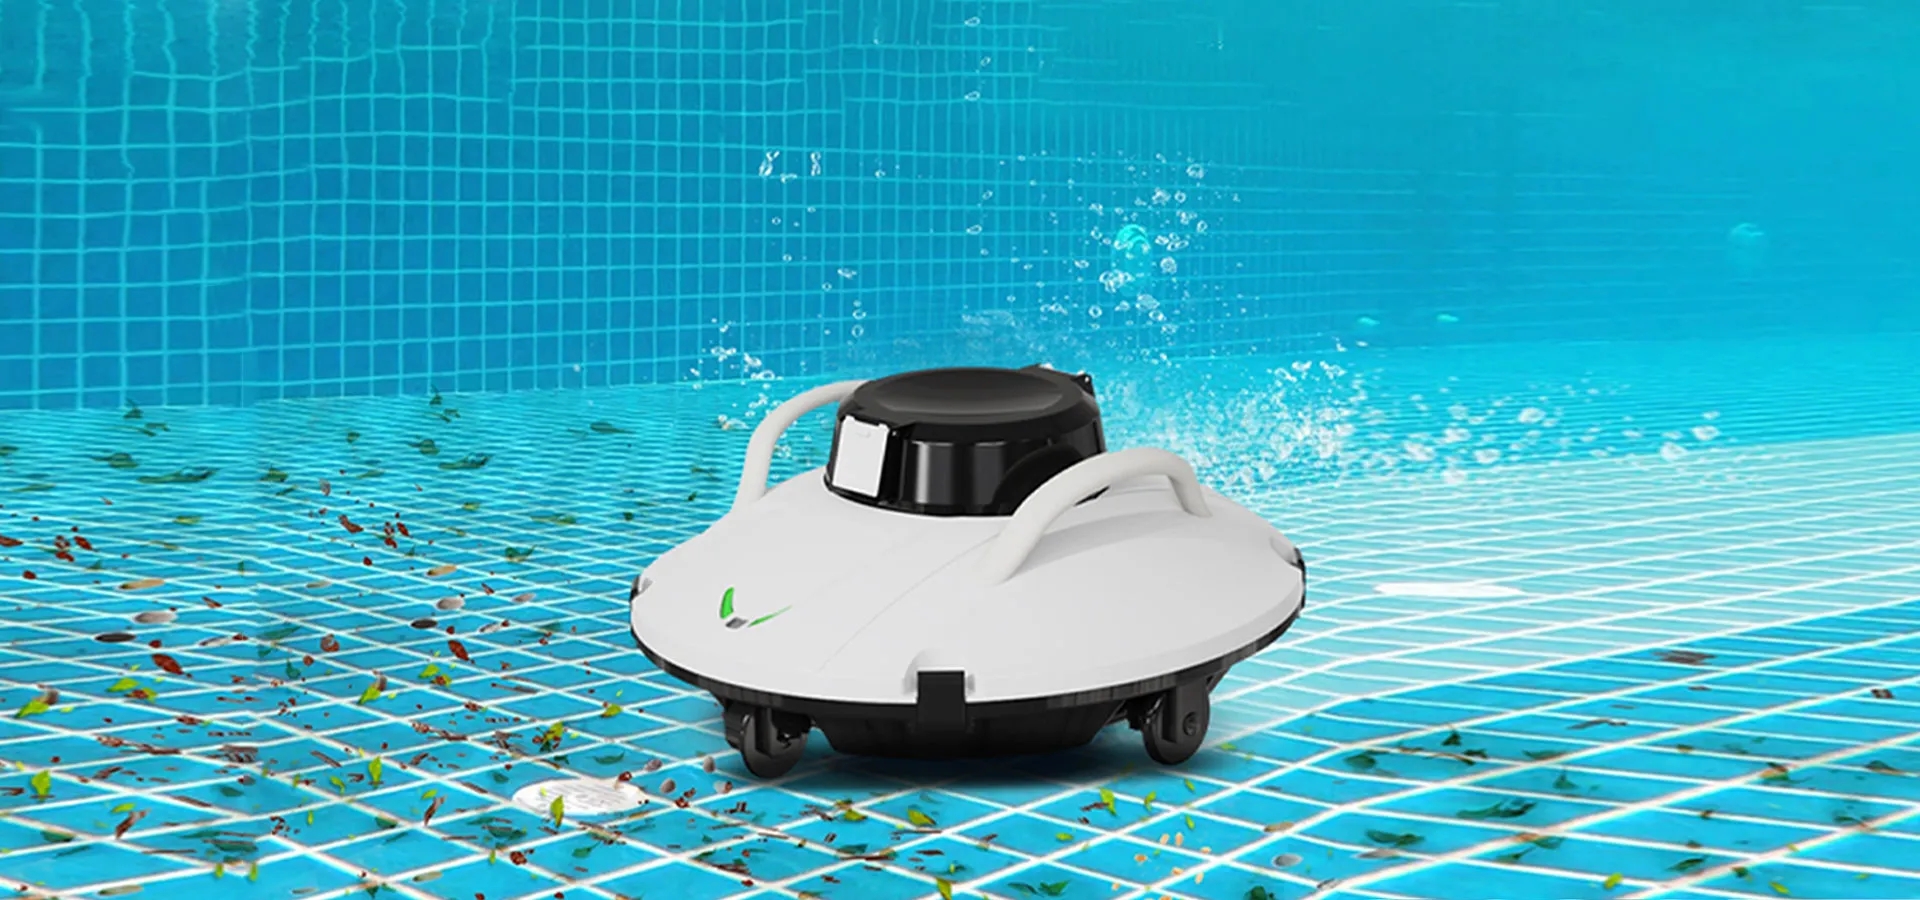 buy robotic pool cleaner